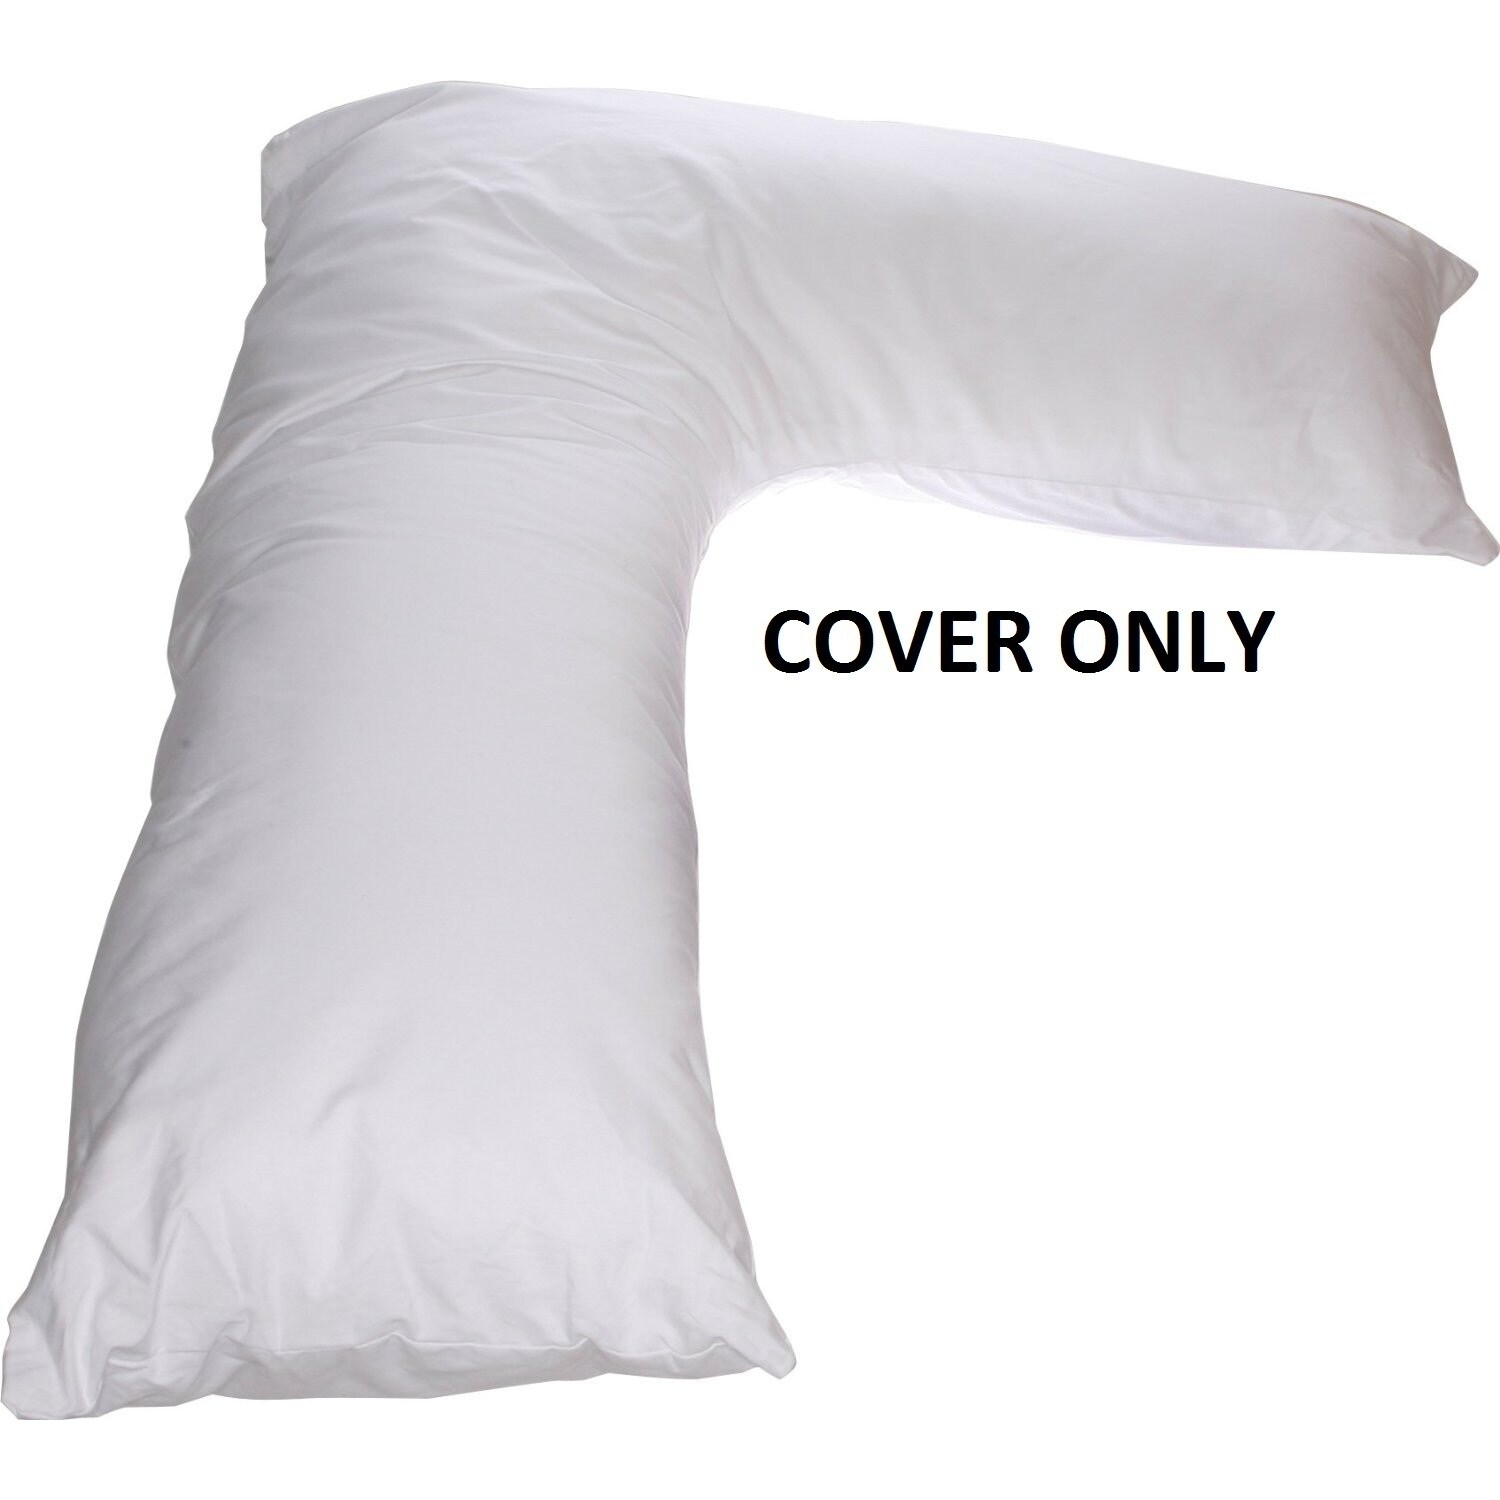 v pillow case cover